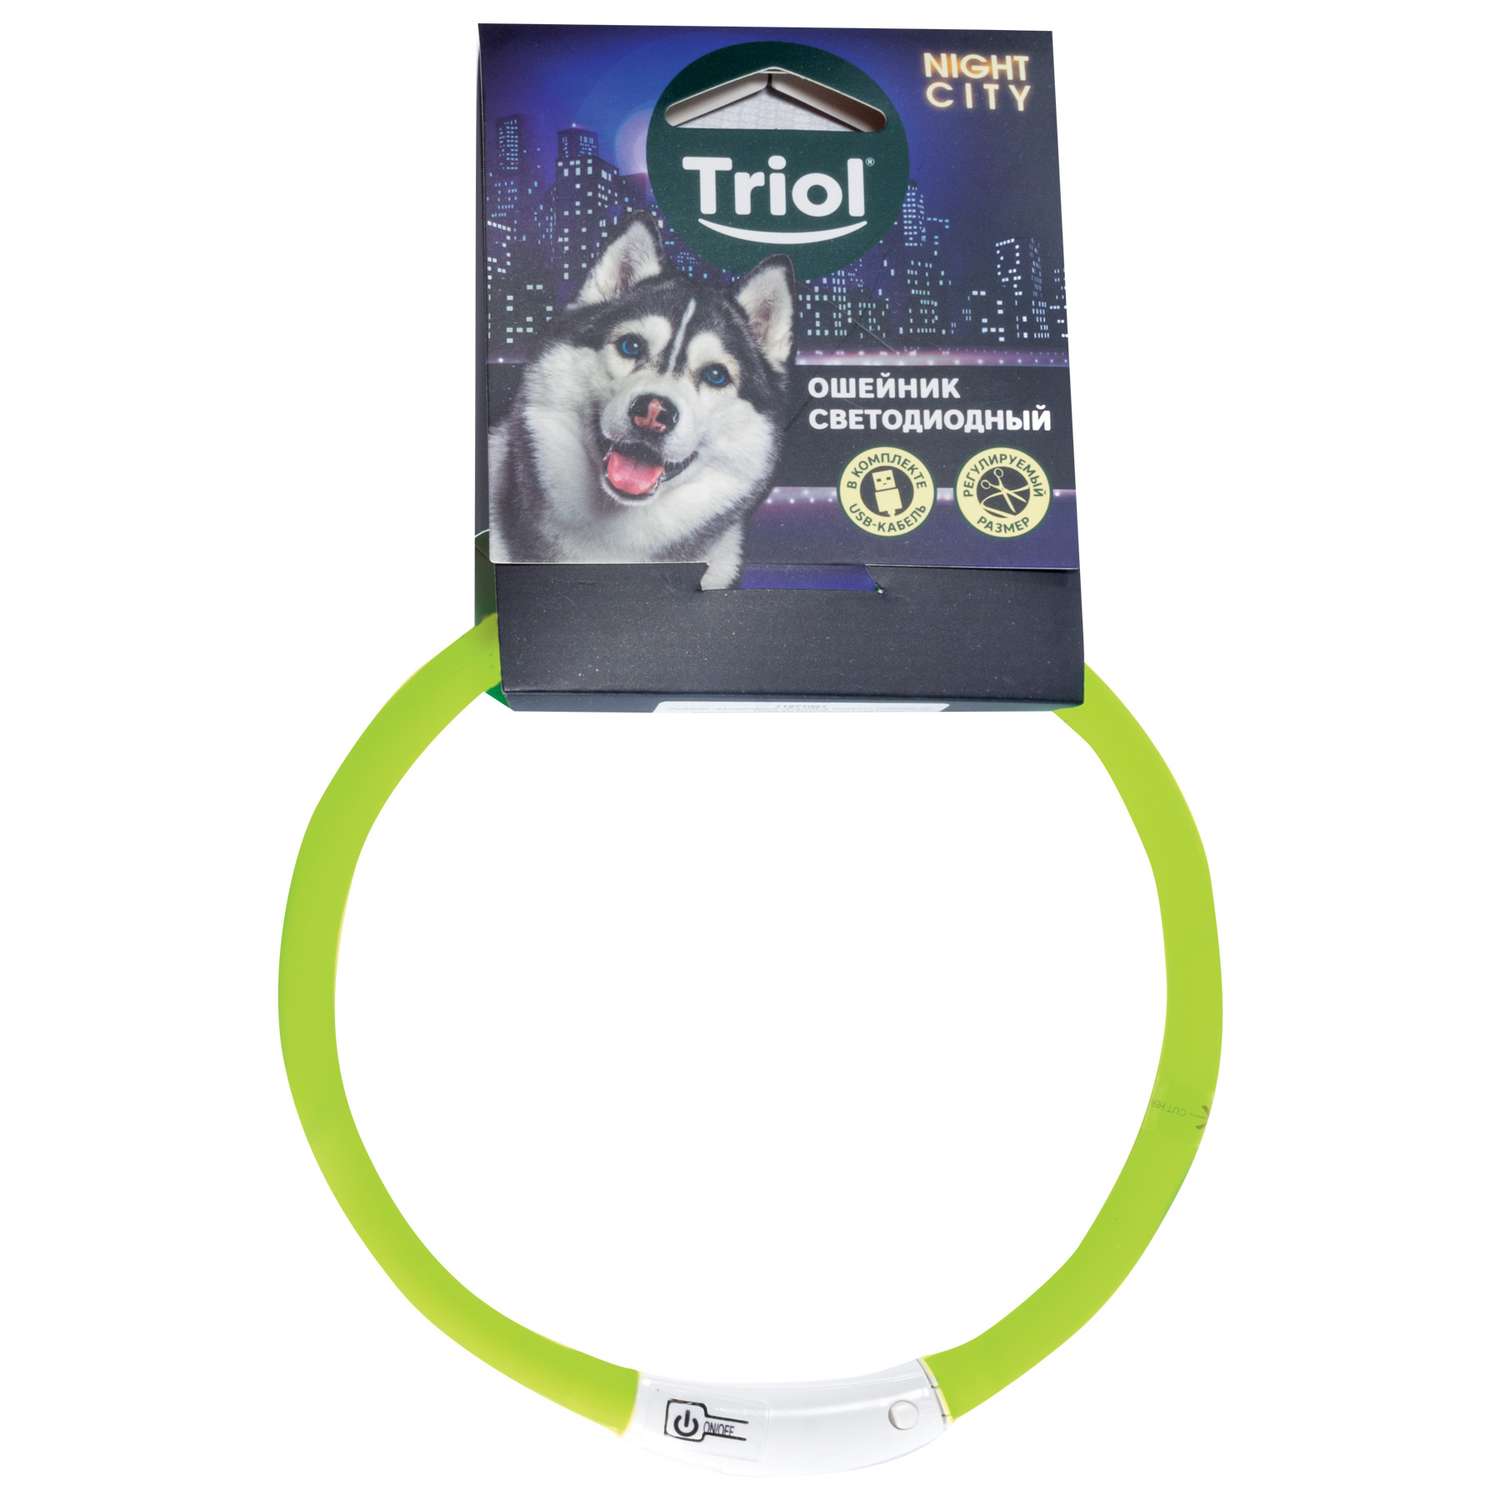 Ошейник для собак Triol Nigt City шнурок cветодиодный M Салатовый - фото 2